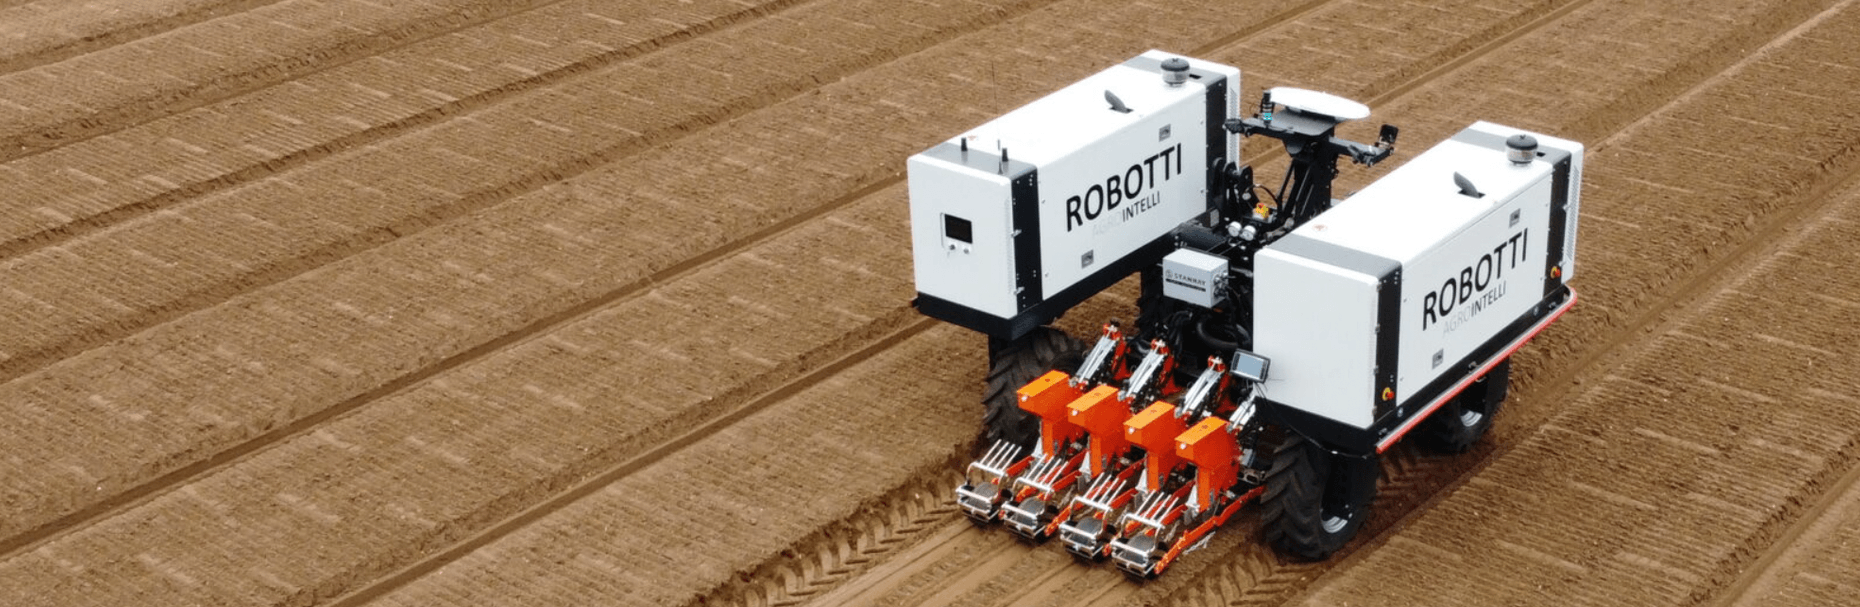 Dansk Maskincenter Robotti Agrointelli